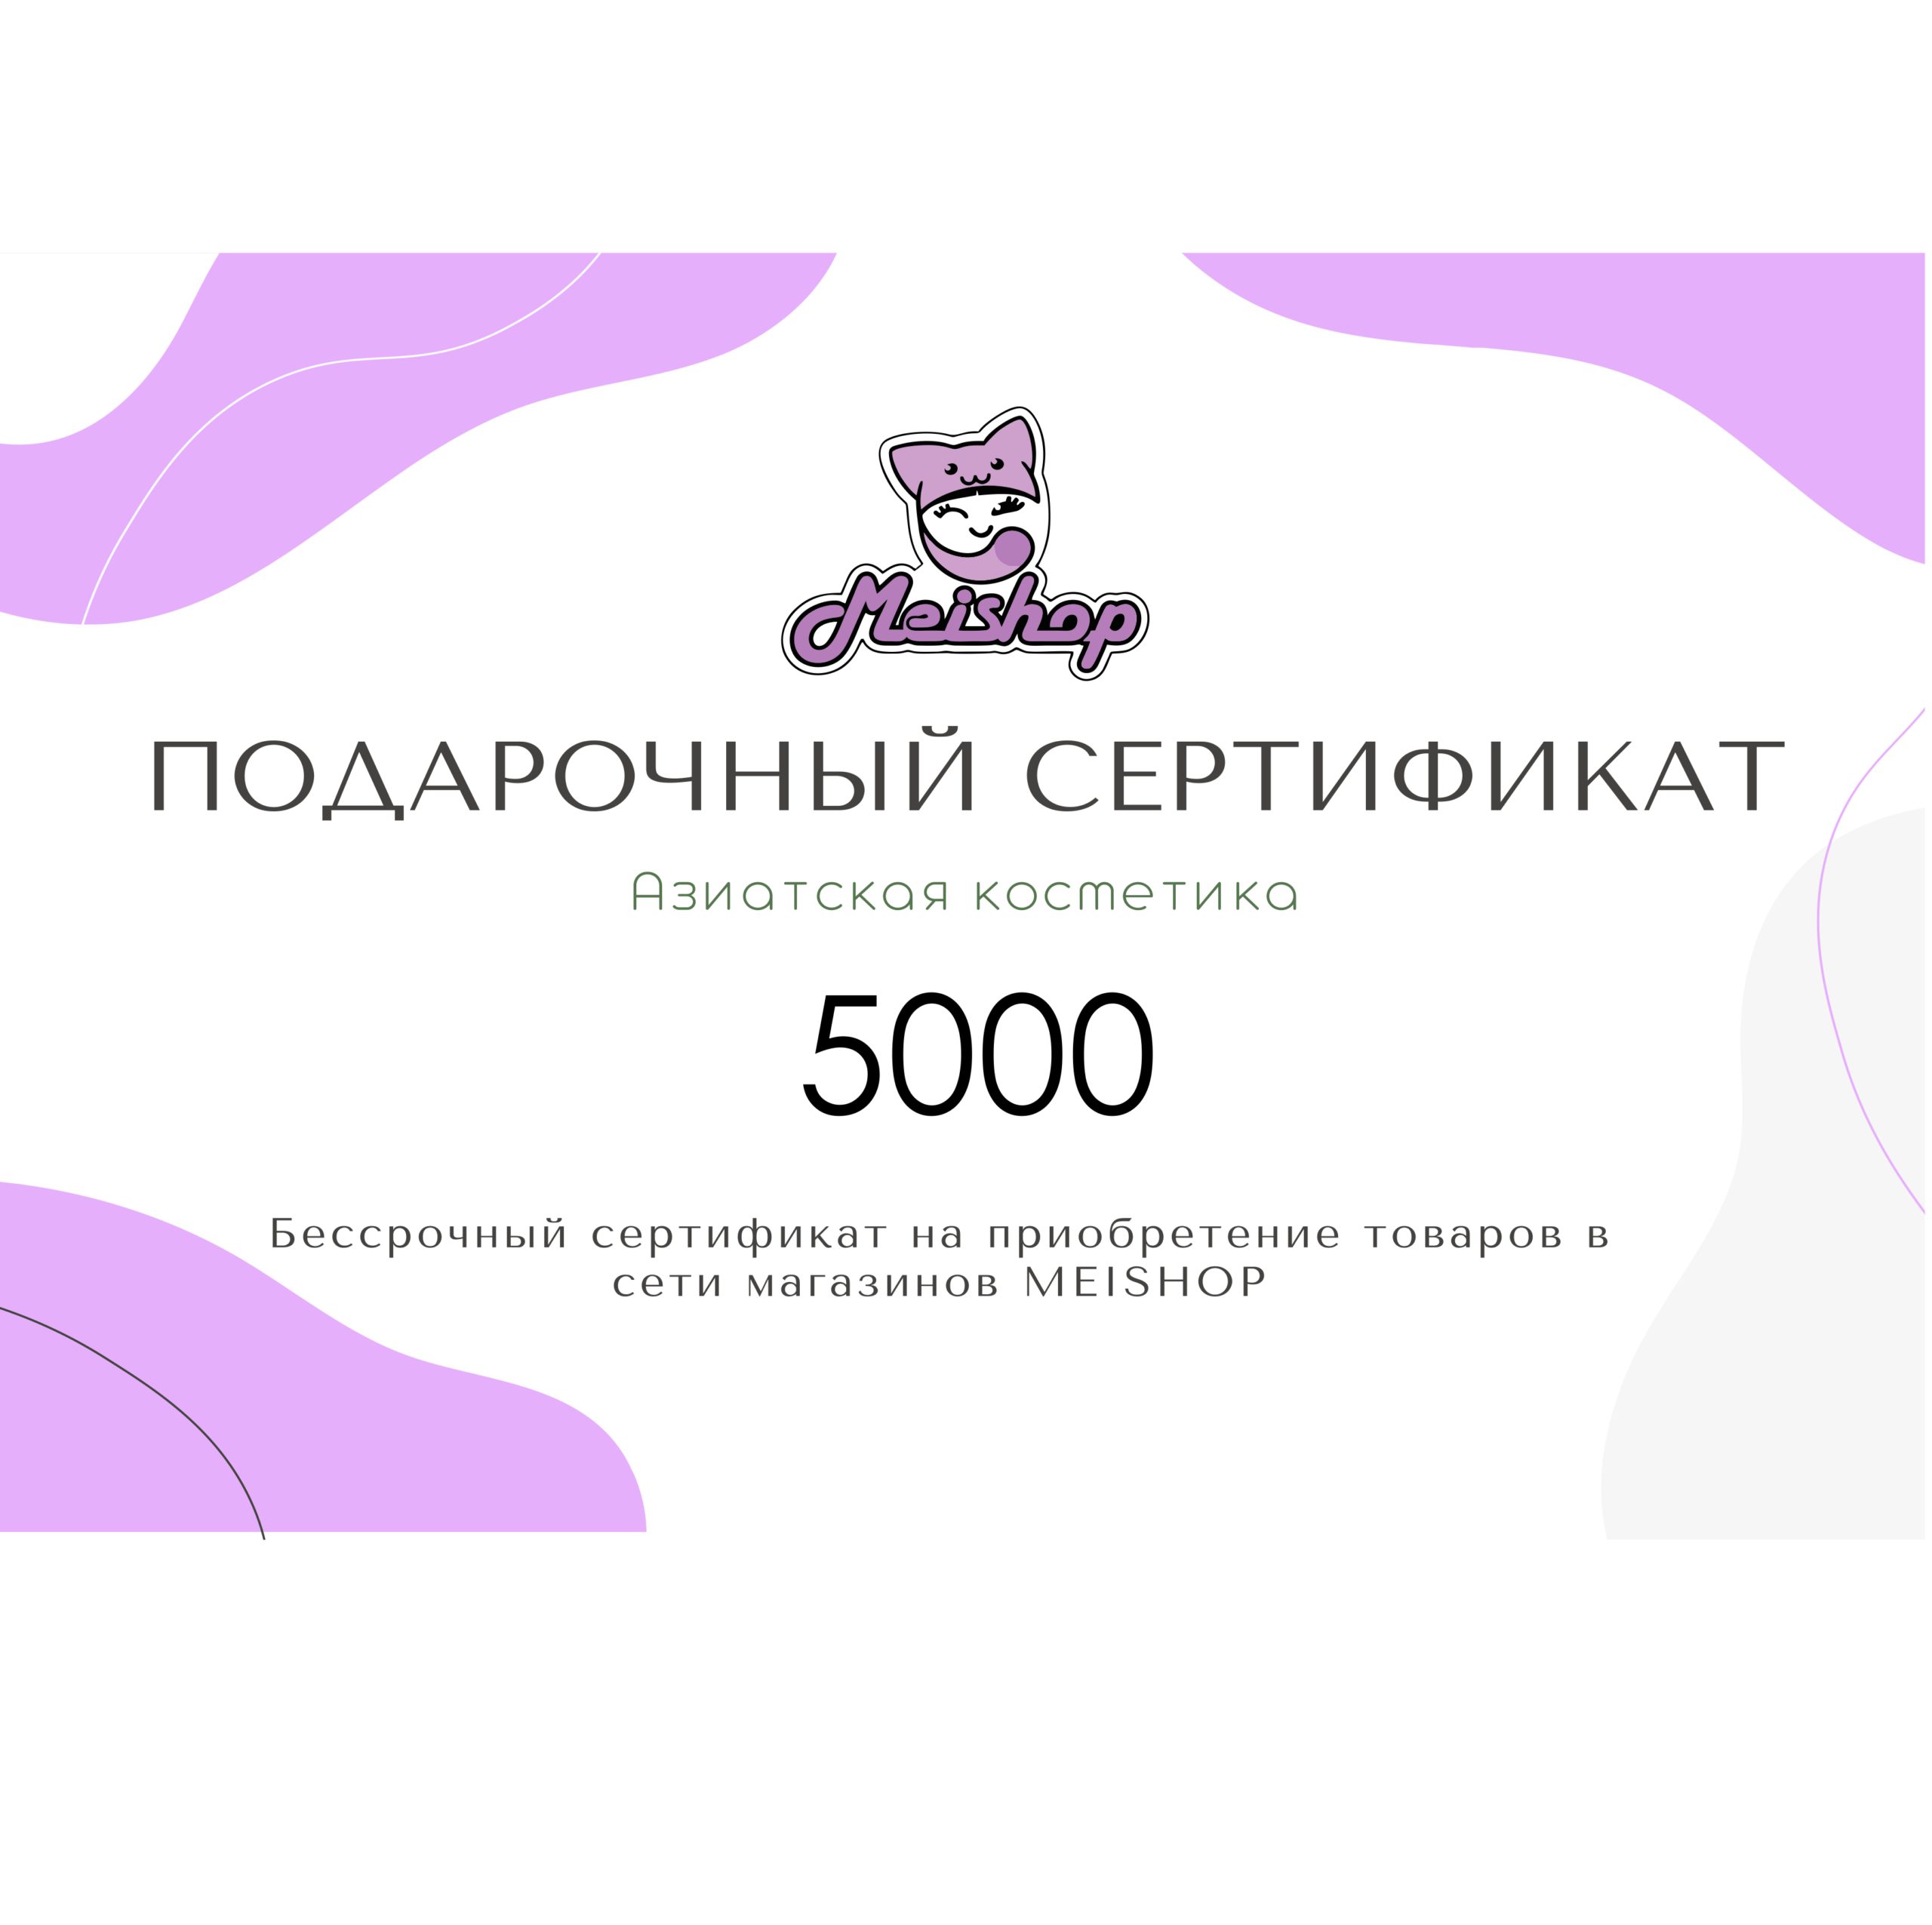 Подарочный сертификат 5000 рублей.